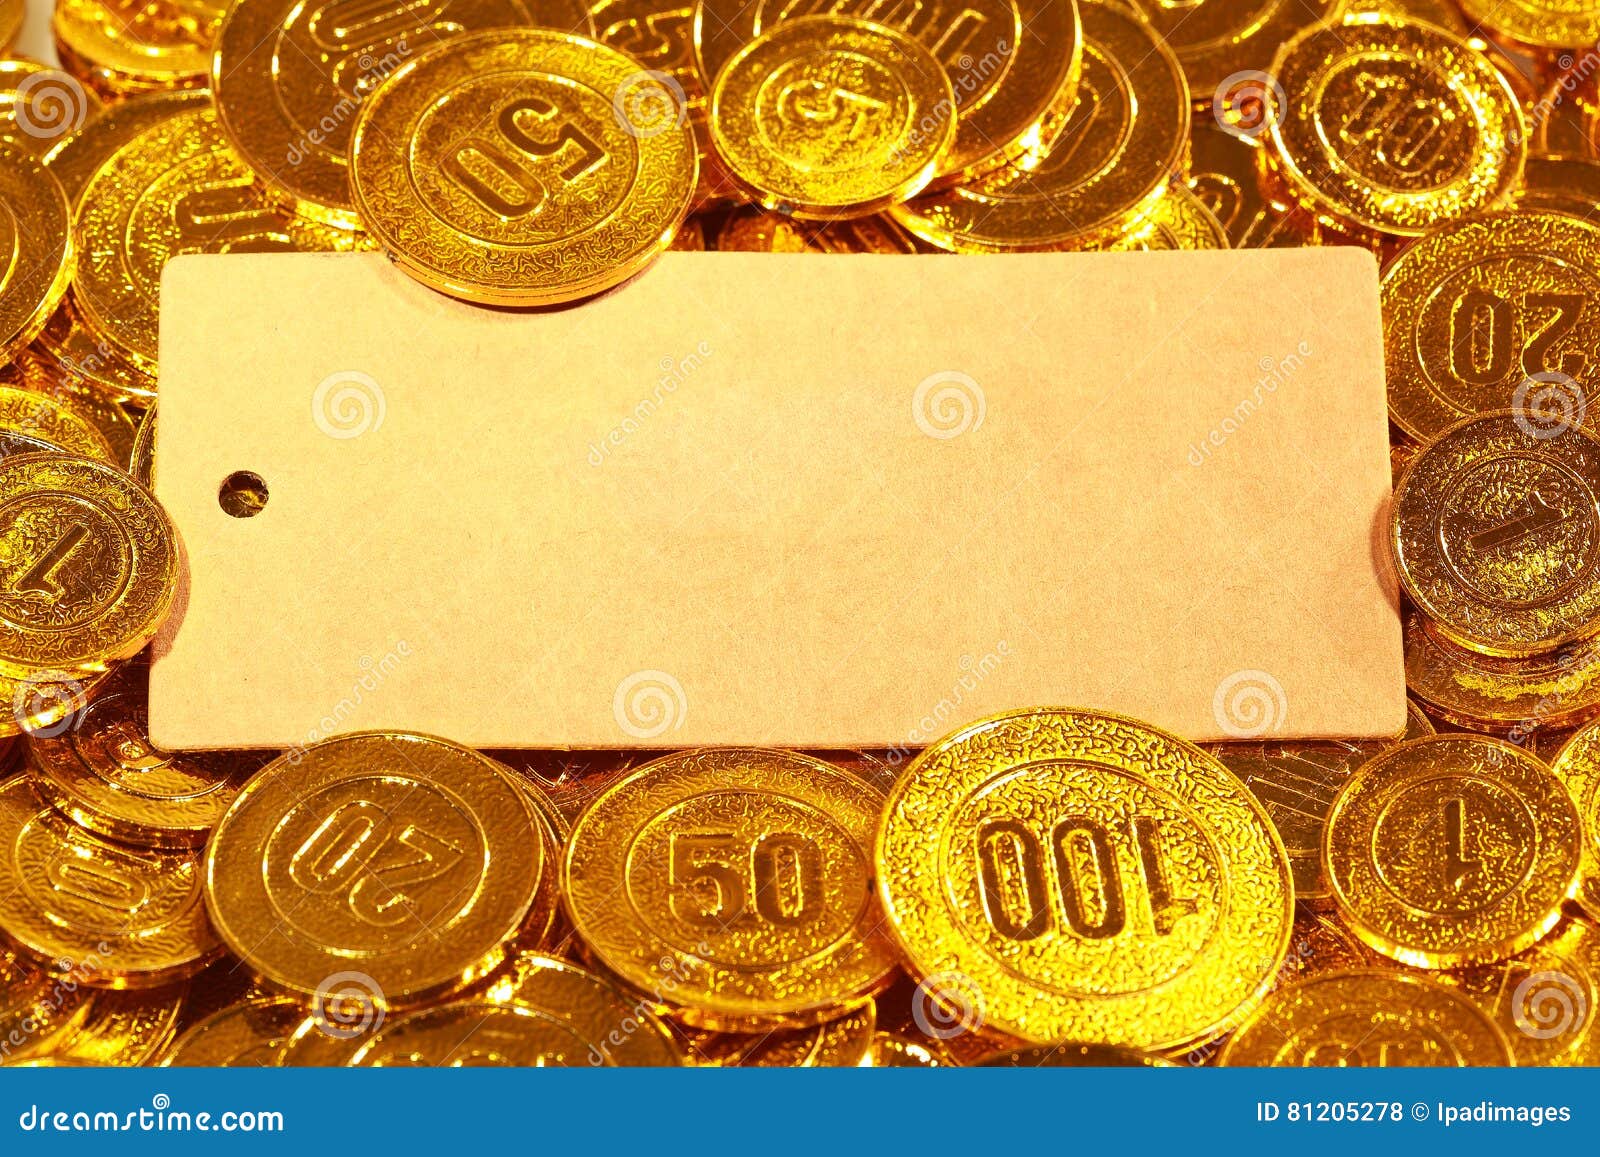 Κάρτα εγγράφου της Kraft στο χρυσό σωρό νομισμάτων